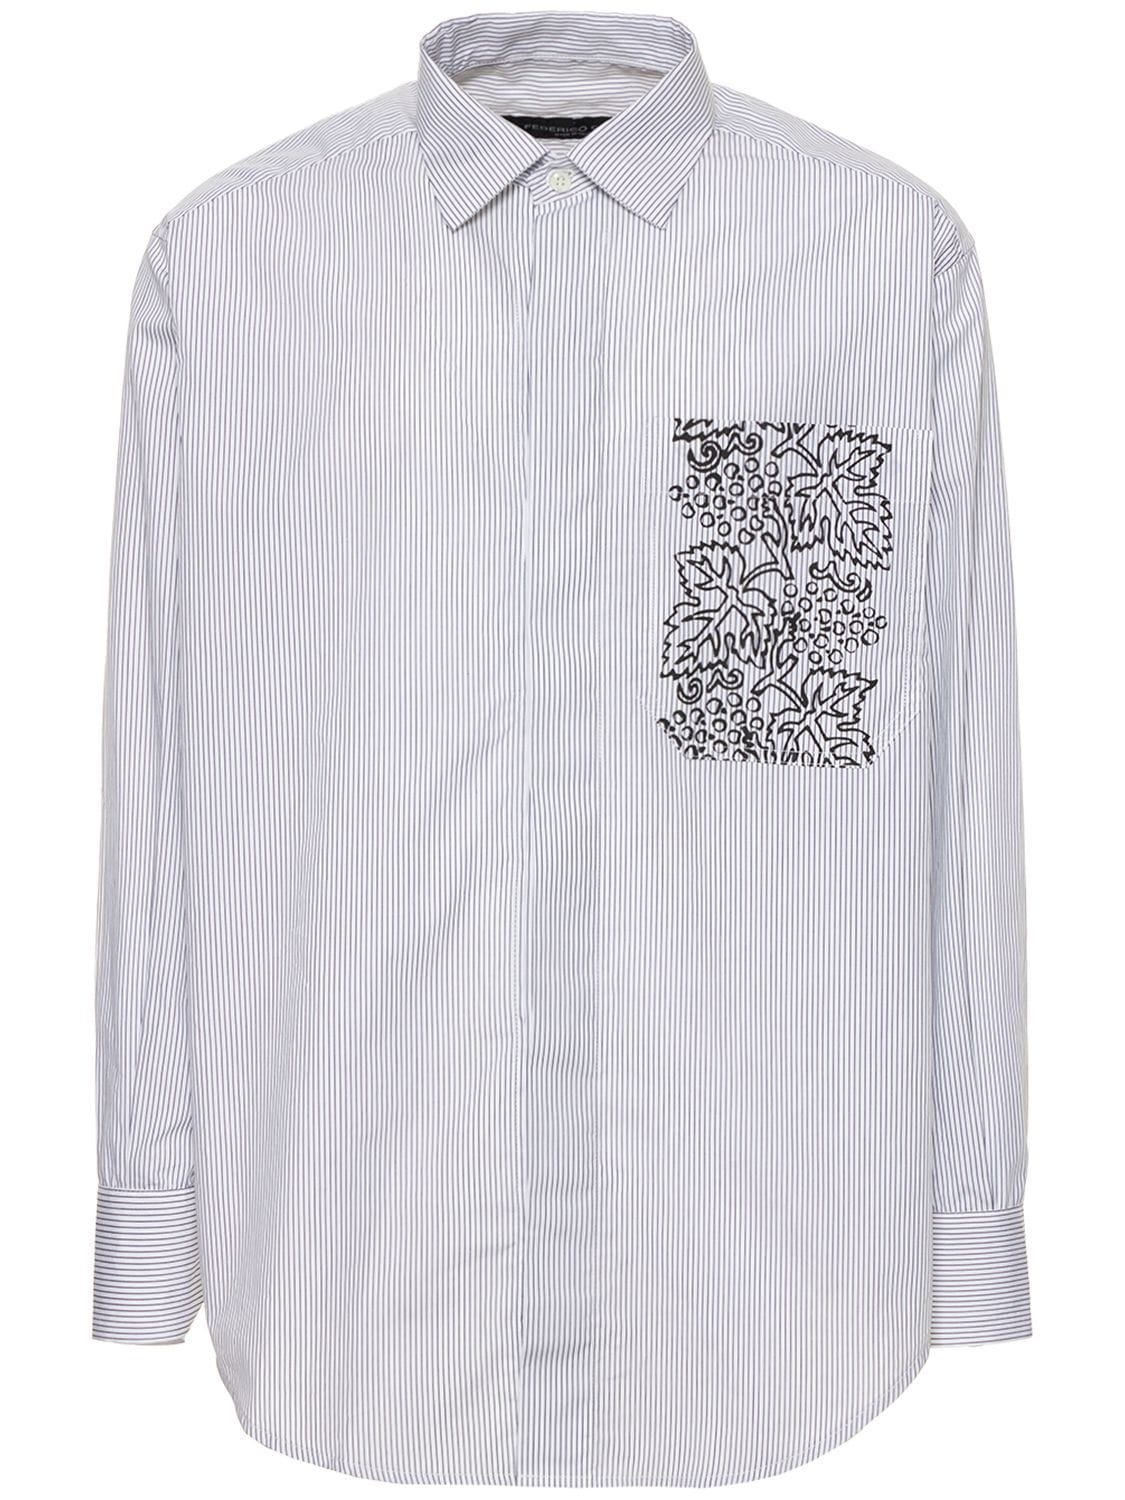 FEDERICO CINA Grape Pocket Cotton Striped Shirt